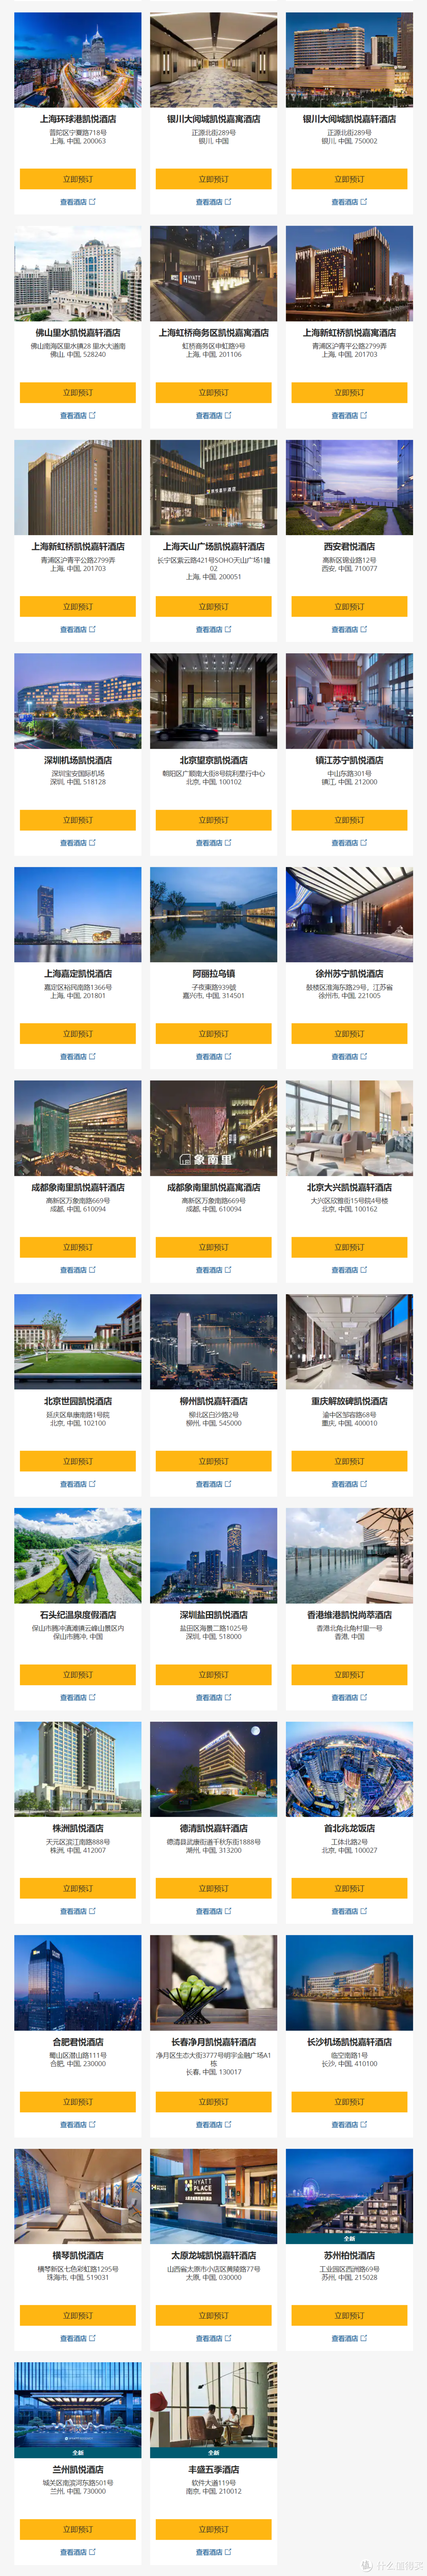 大中华区参与活动的71家酒店列表